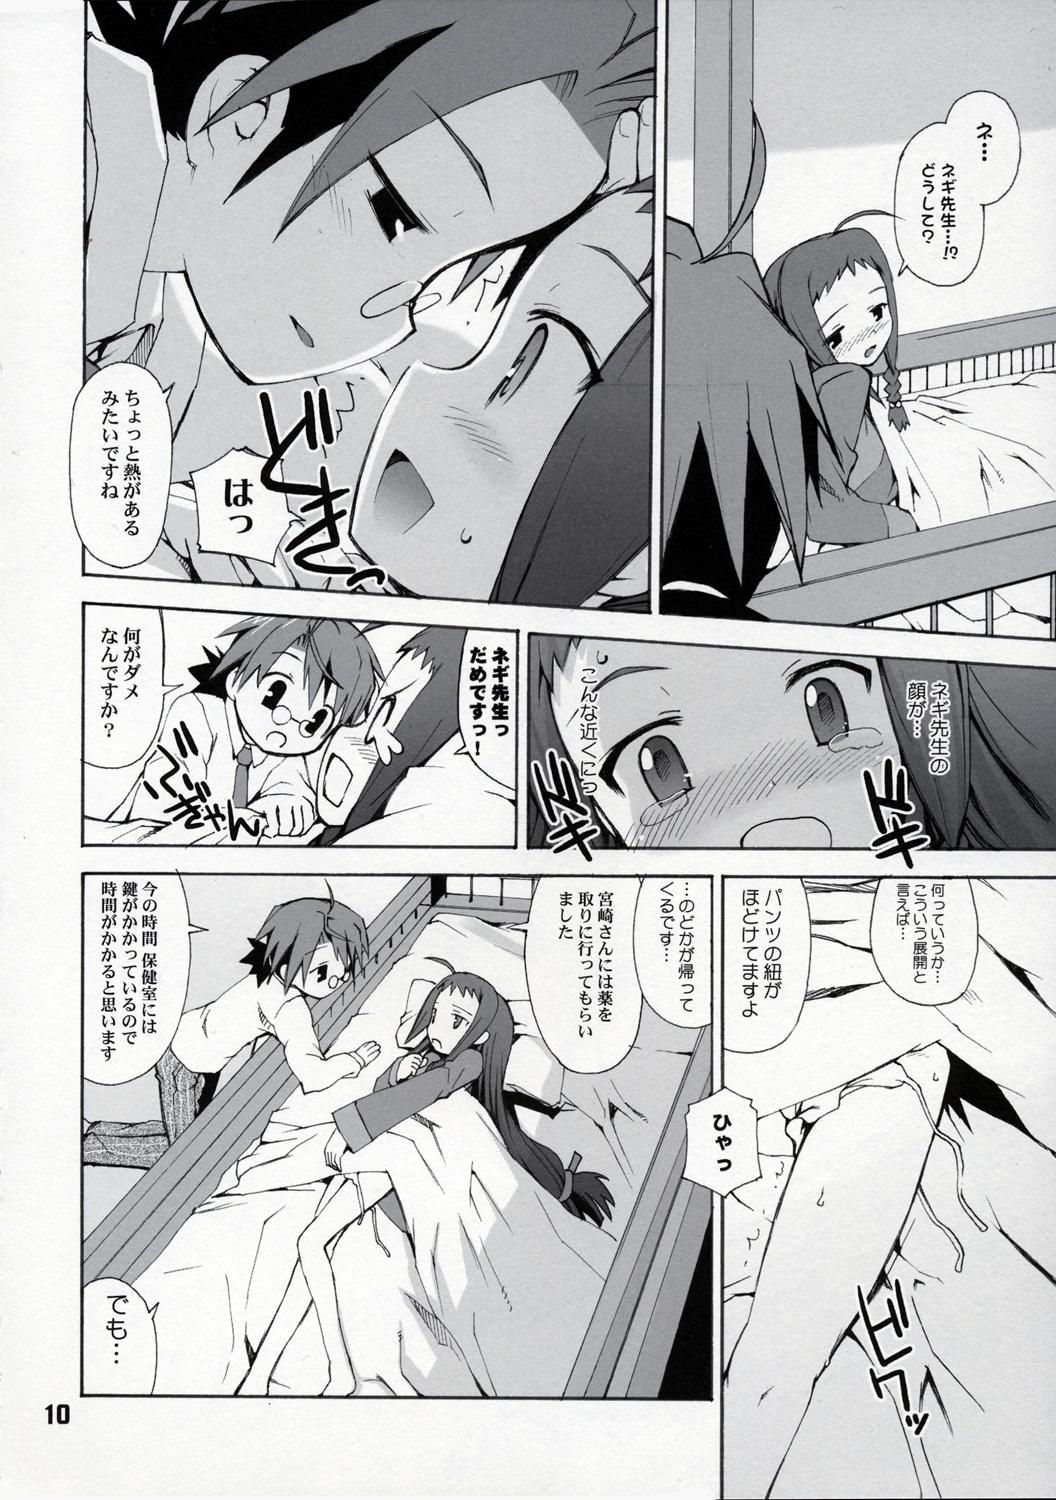 Tetona Practice Bigi Naru Pua! - Mahou sensei negima HD - Page 9